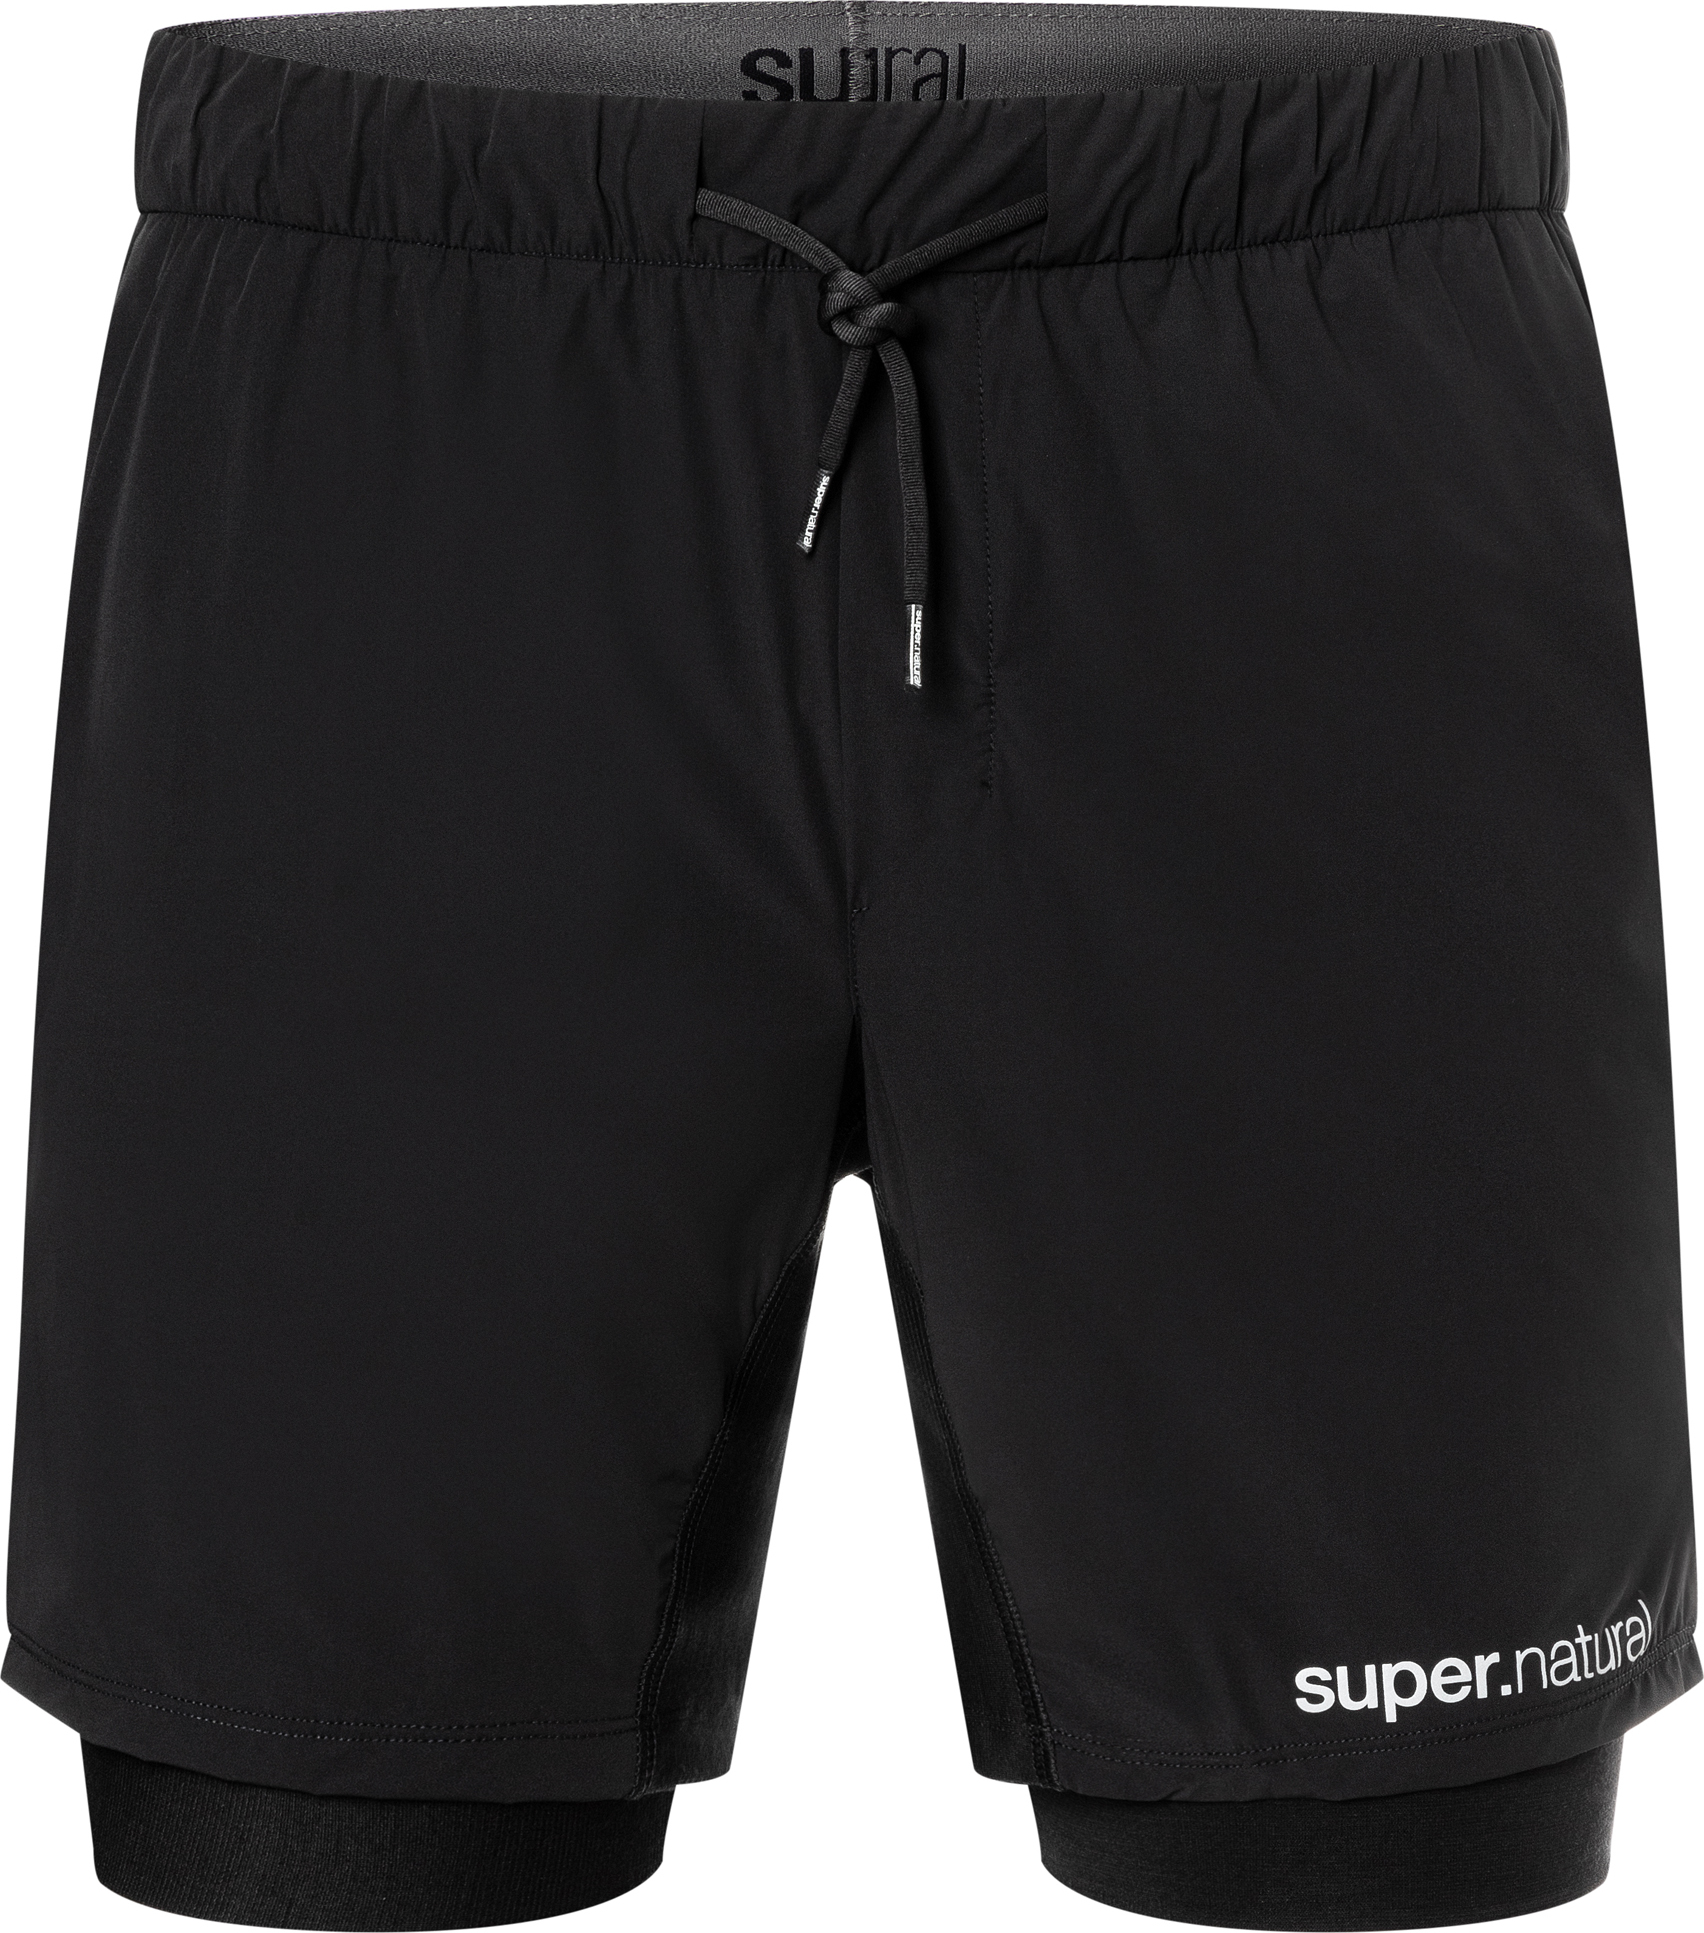 Super.Natural Men’s Double Layer Shorts Jet Black